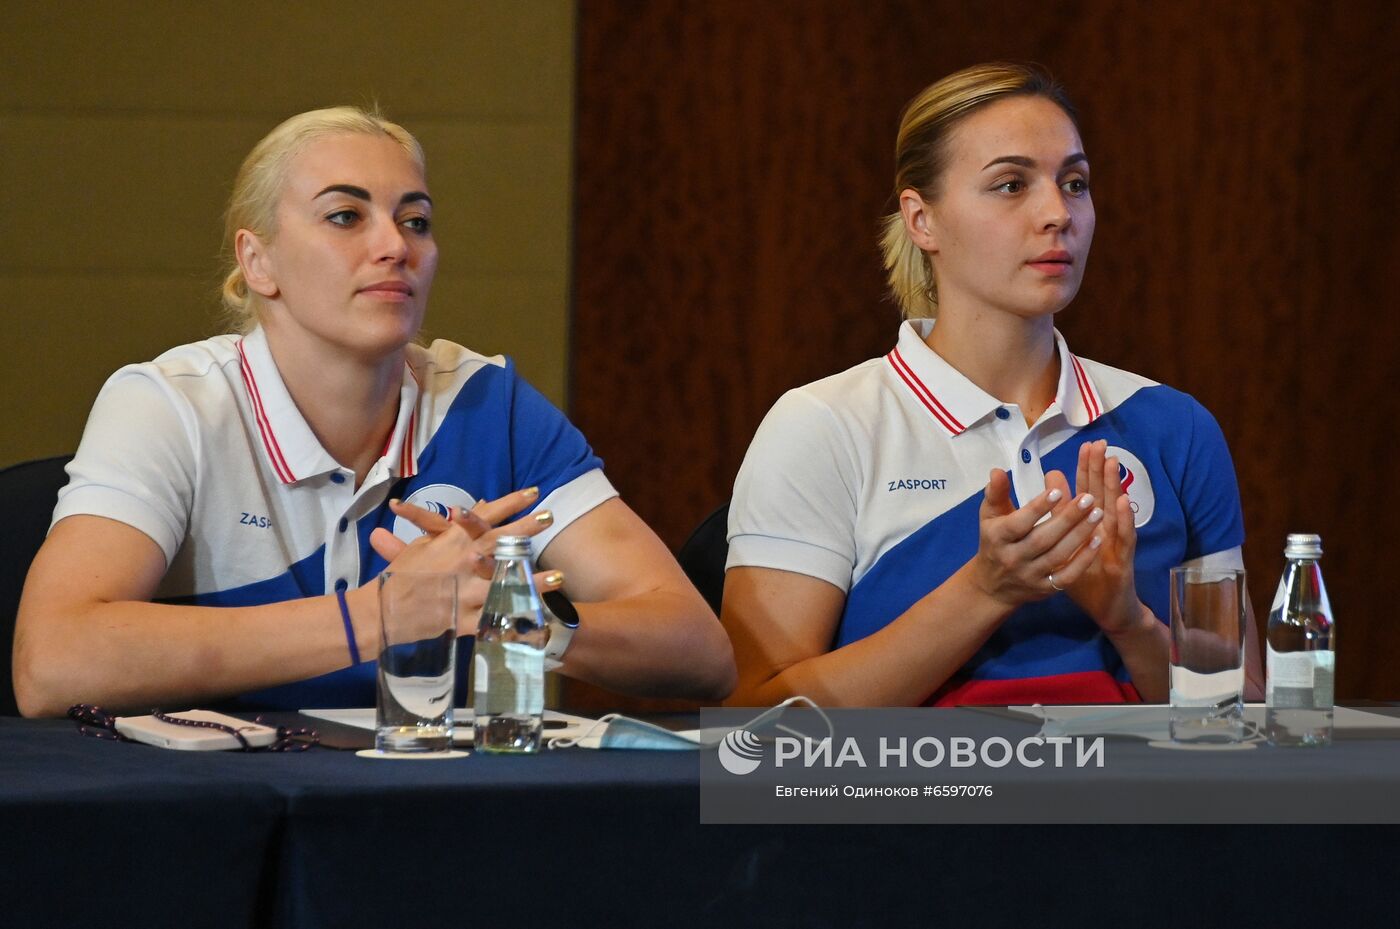 П/к женской сборной России по гандболу, посвященная участию на Олимпиаде-2020